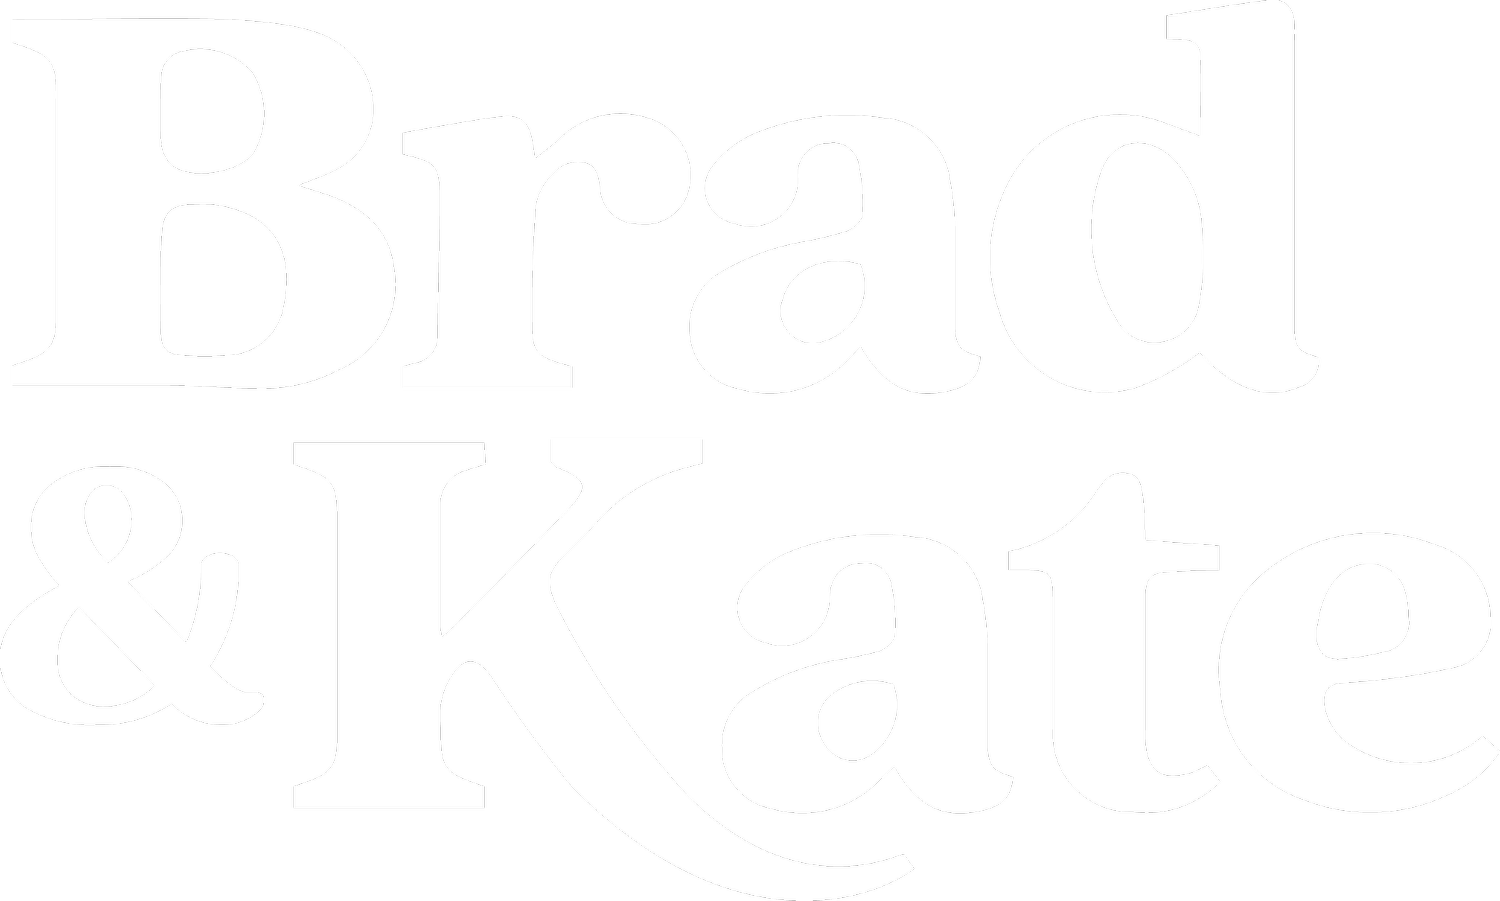 Brad & Kate